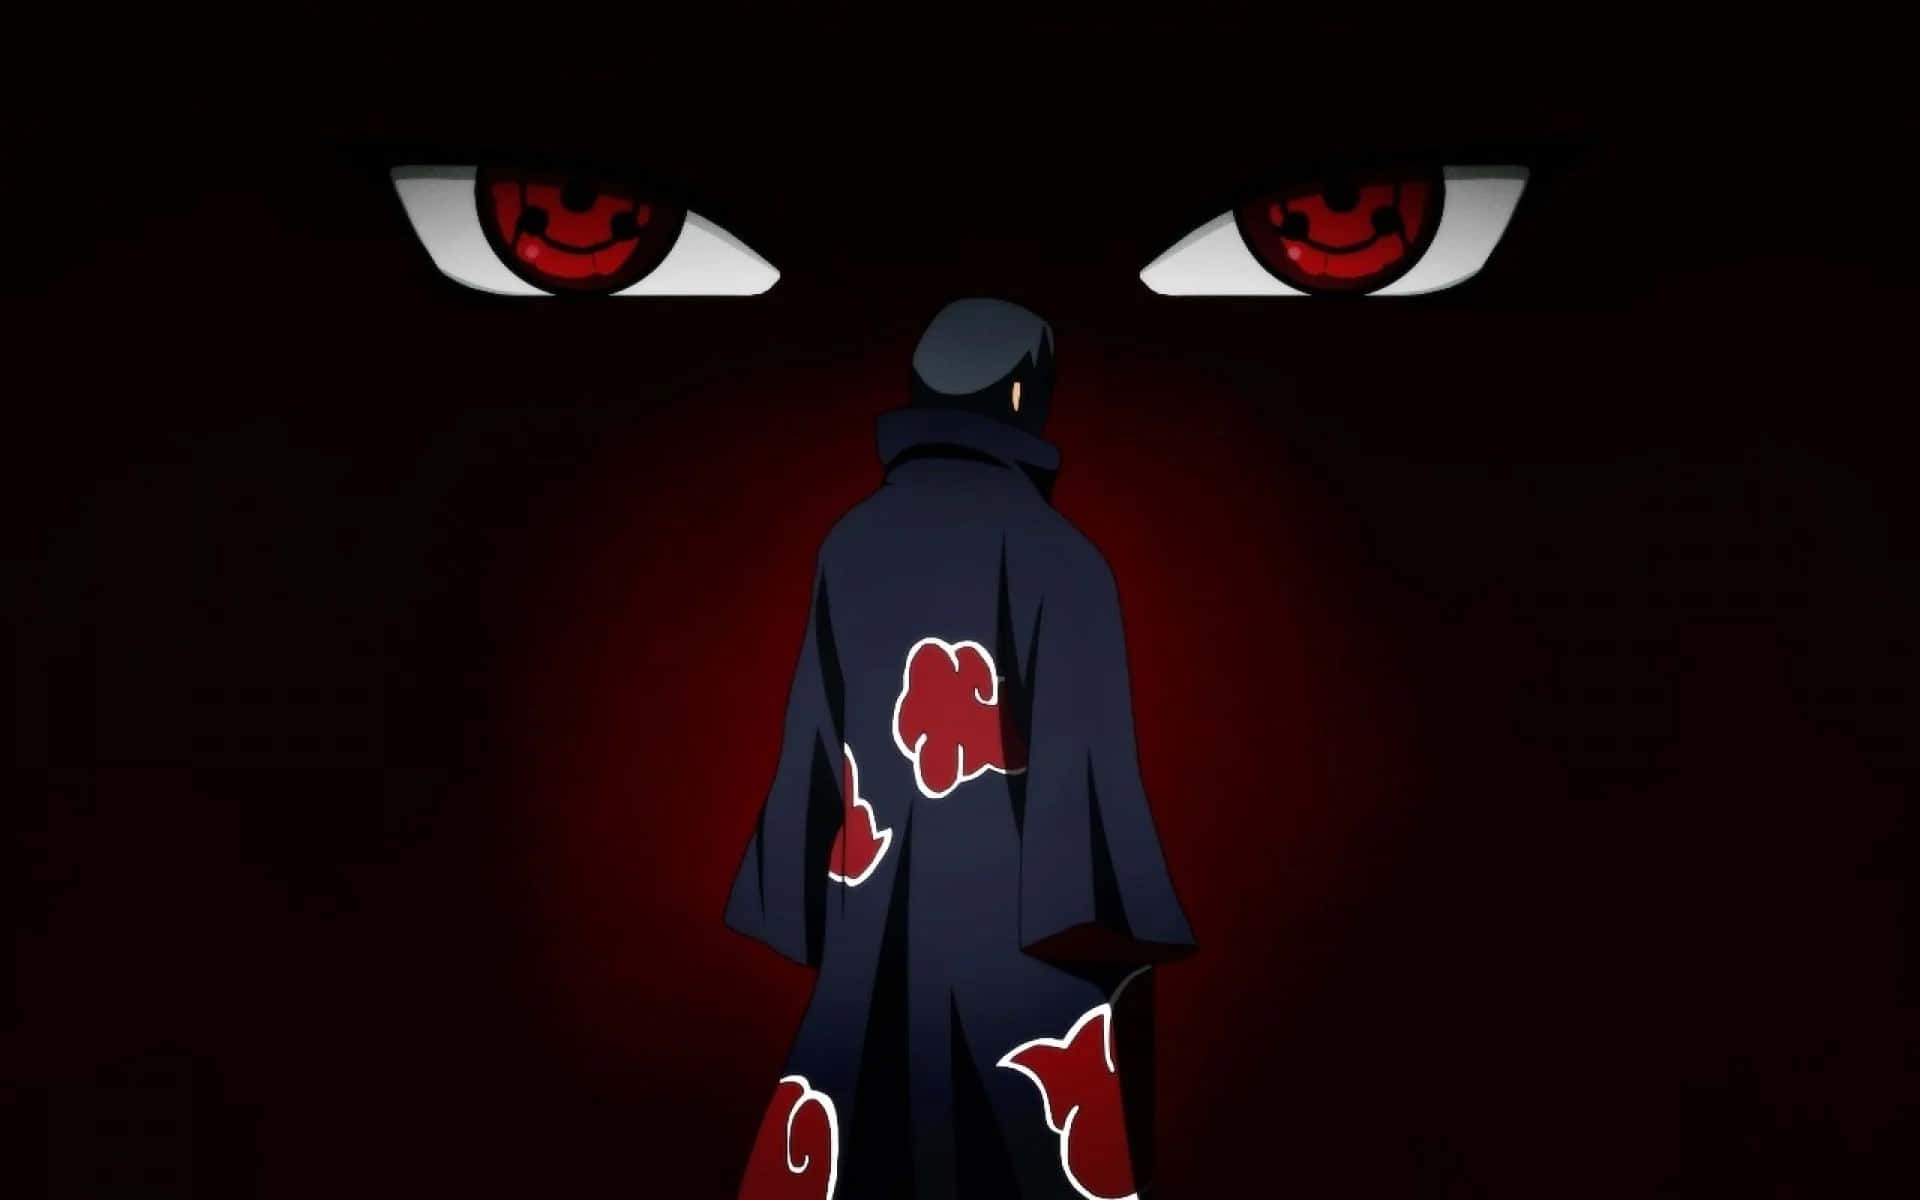 Join Akatsuki, the mysterious organization of ninja warriors.